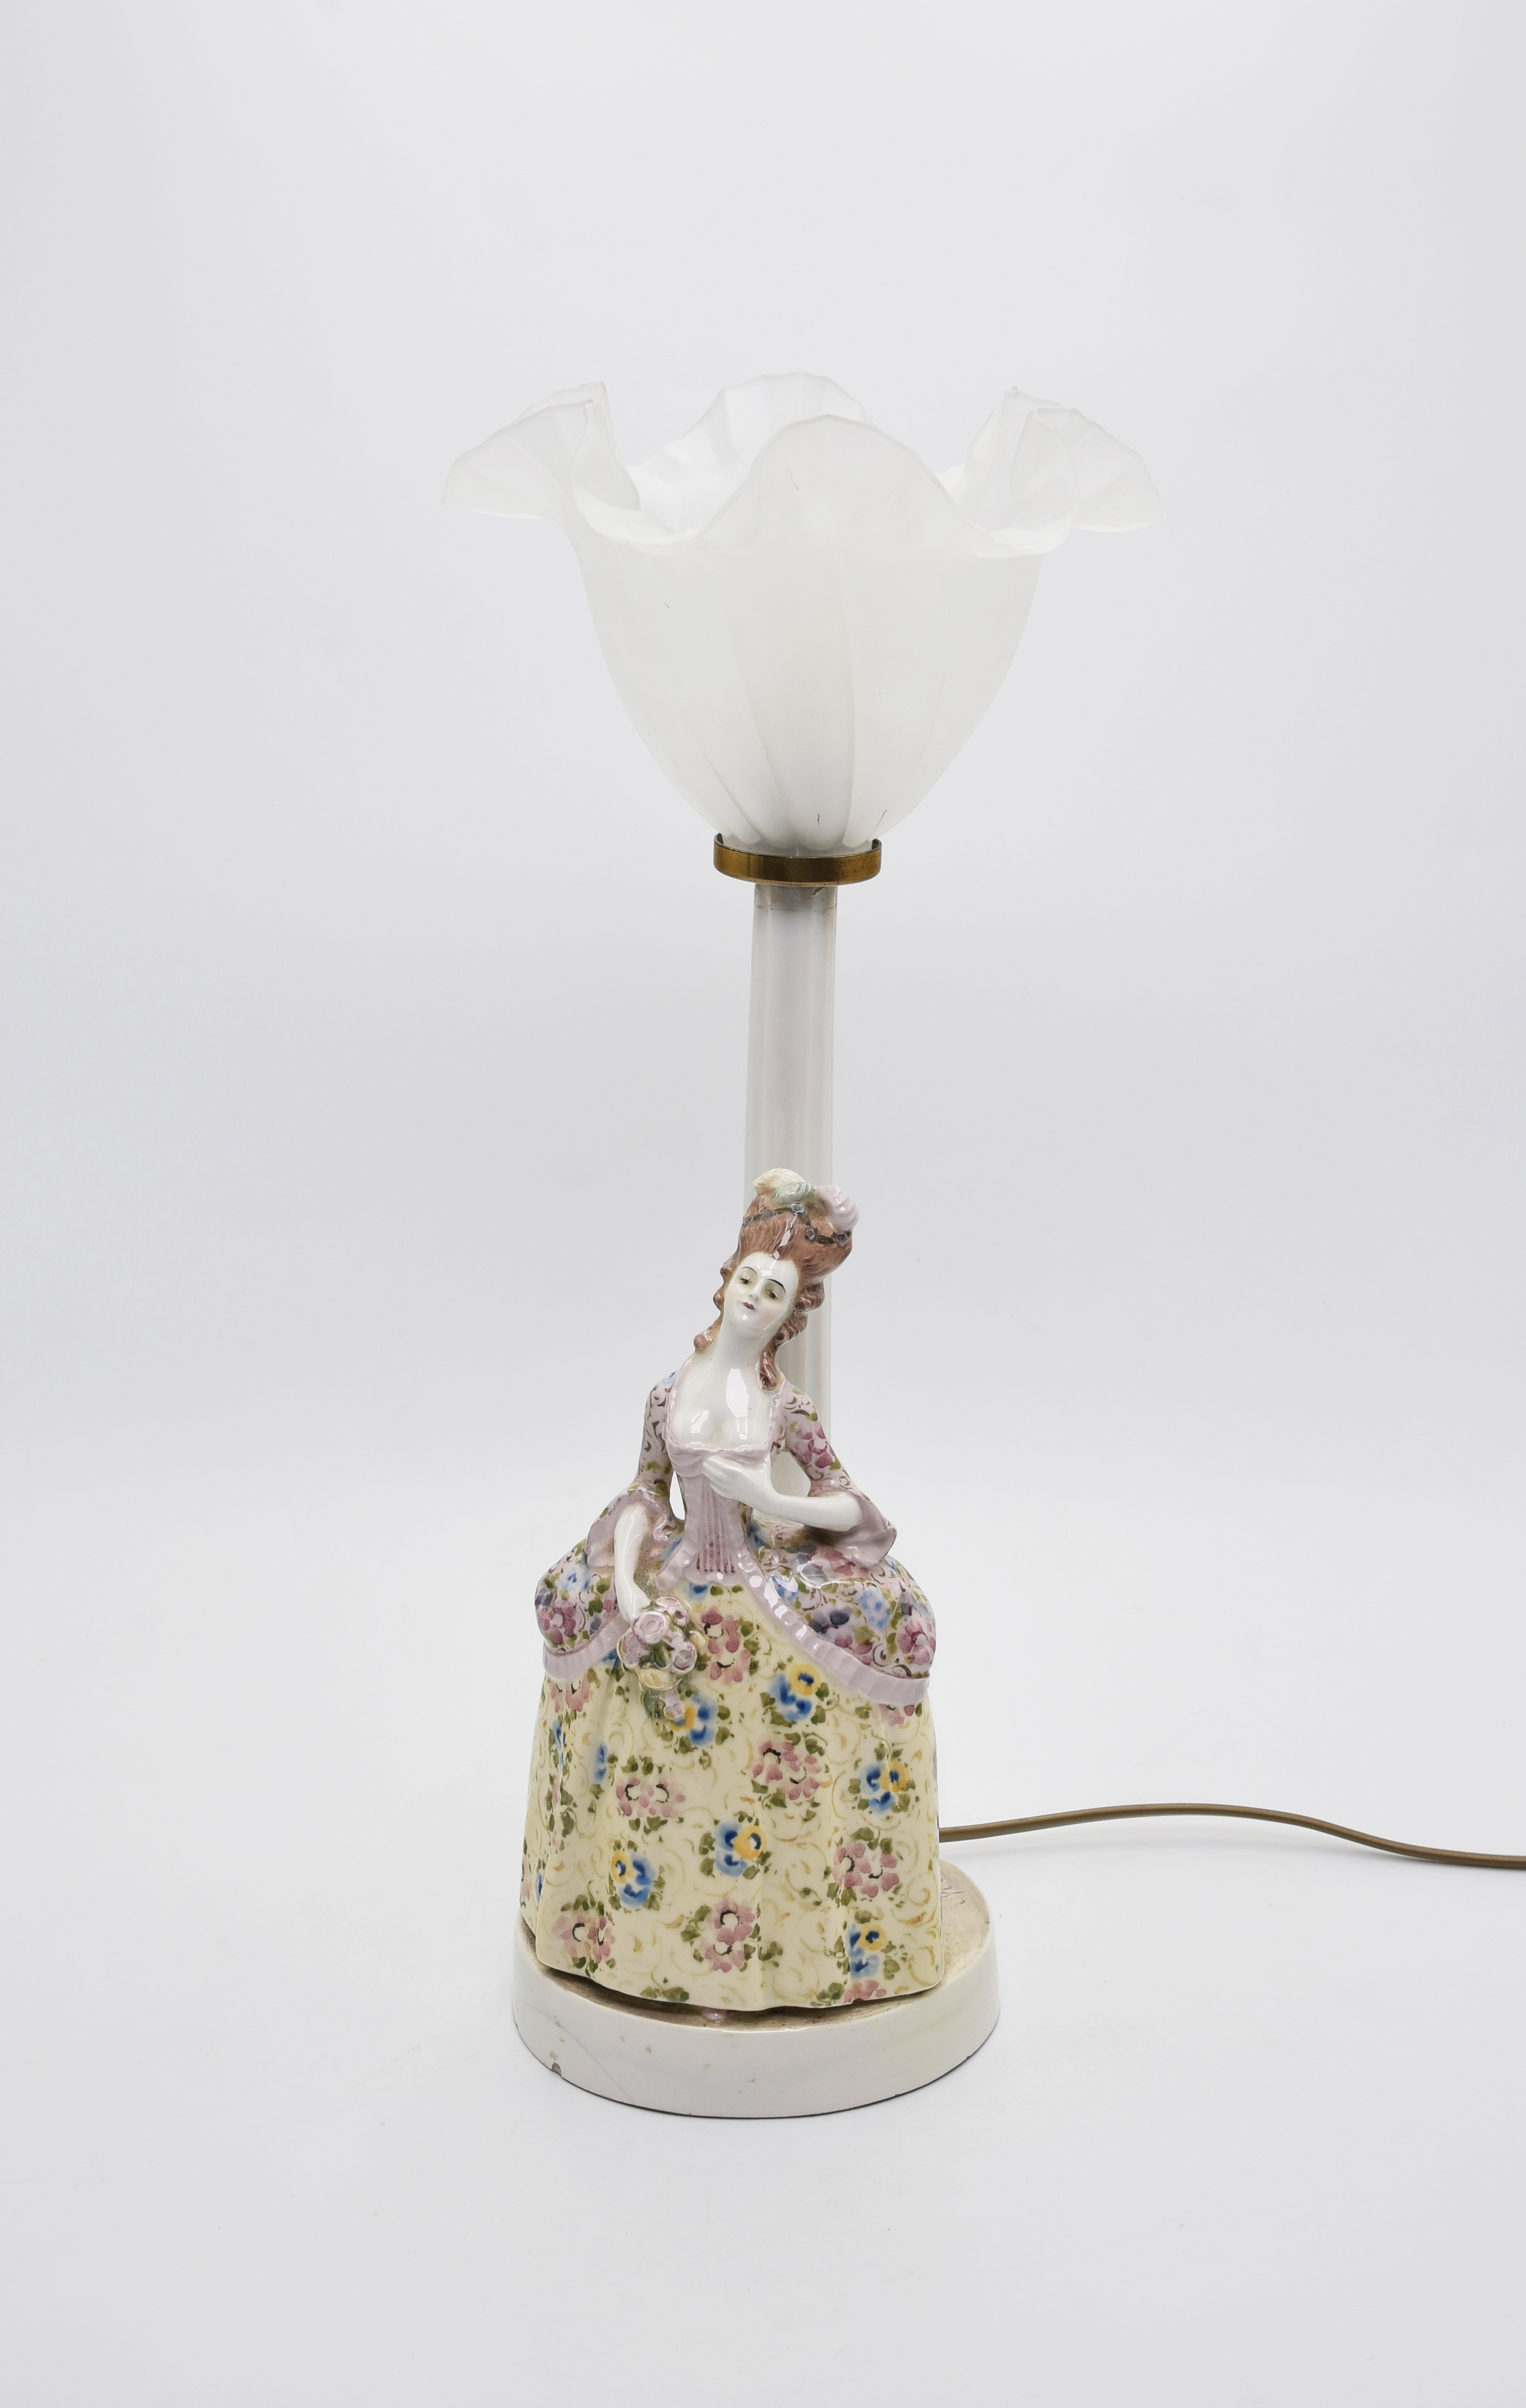 Lampa - dama w krynolinie, z bukietem róż, ze szklanym kloszem